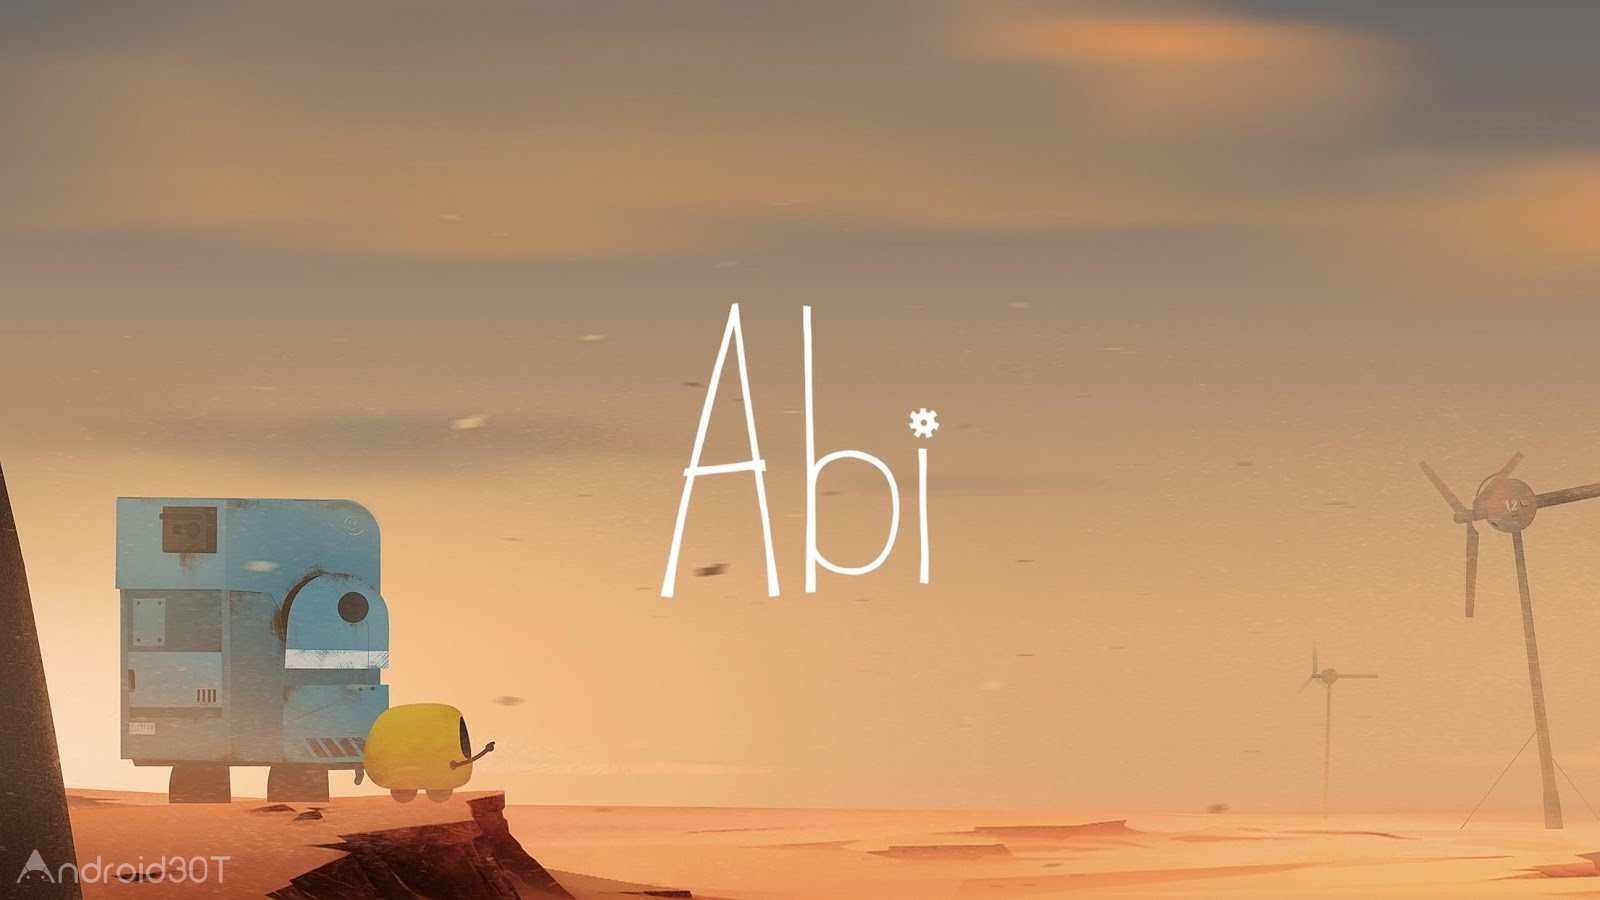 دانلود Abi: A Robot’s Tale 1.1 – بازی فکری جدید روبات های اندروید